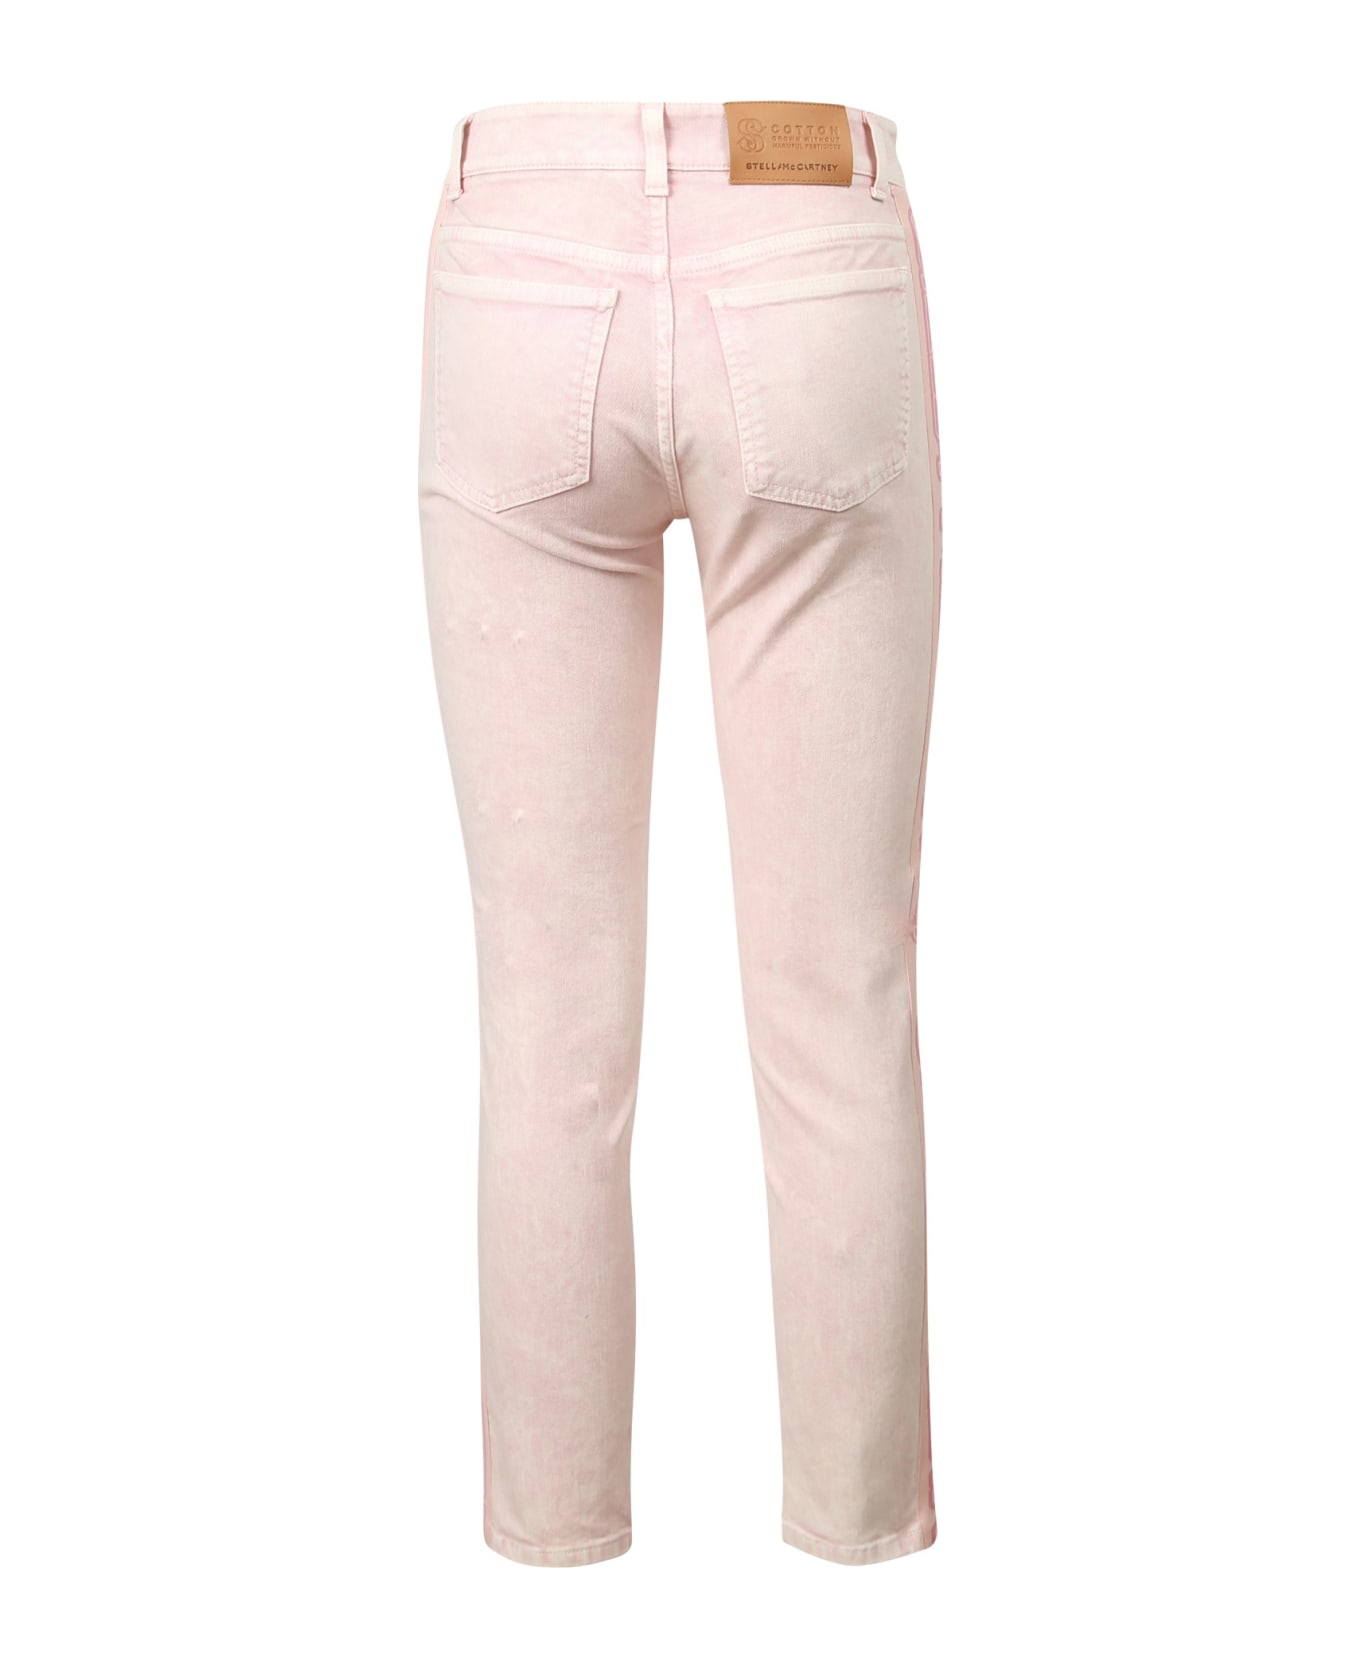 Stella McCartney Boyfriend Skinny Jeans - Pink